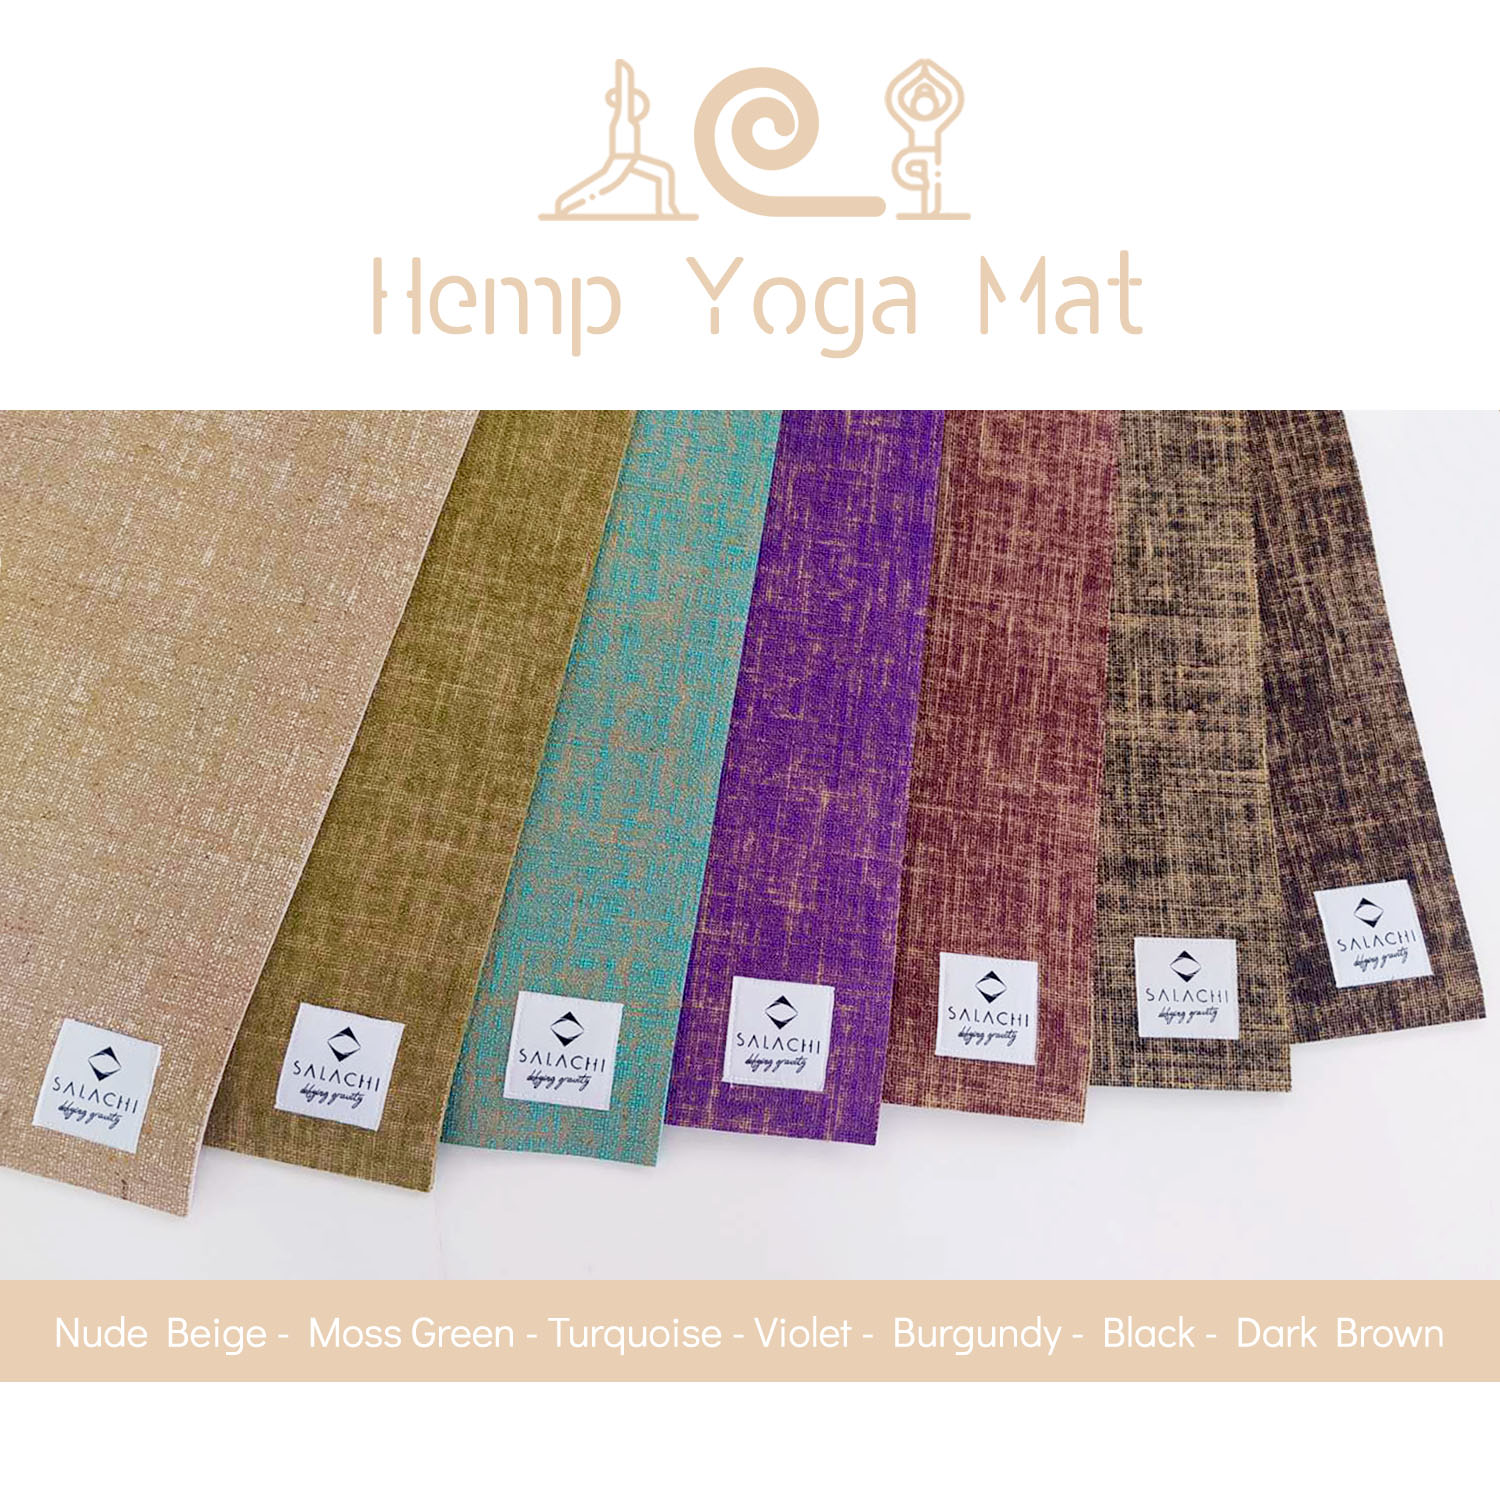 Verkeerd fax druiven turquoise yoga mat - Wellness Naturale